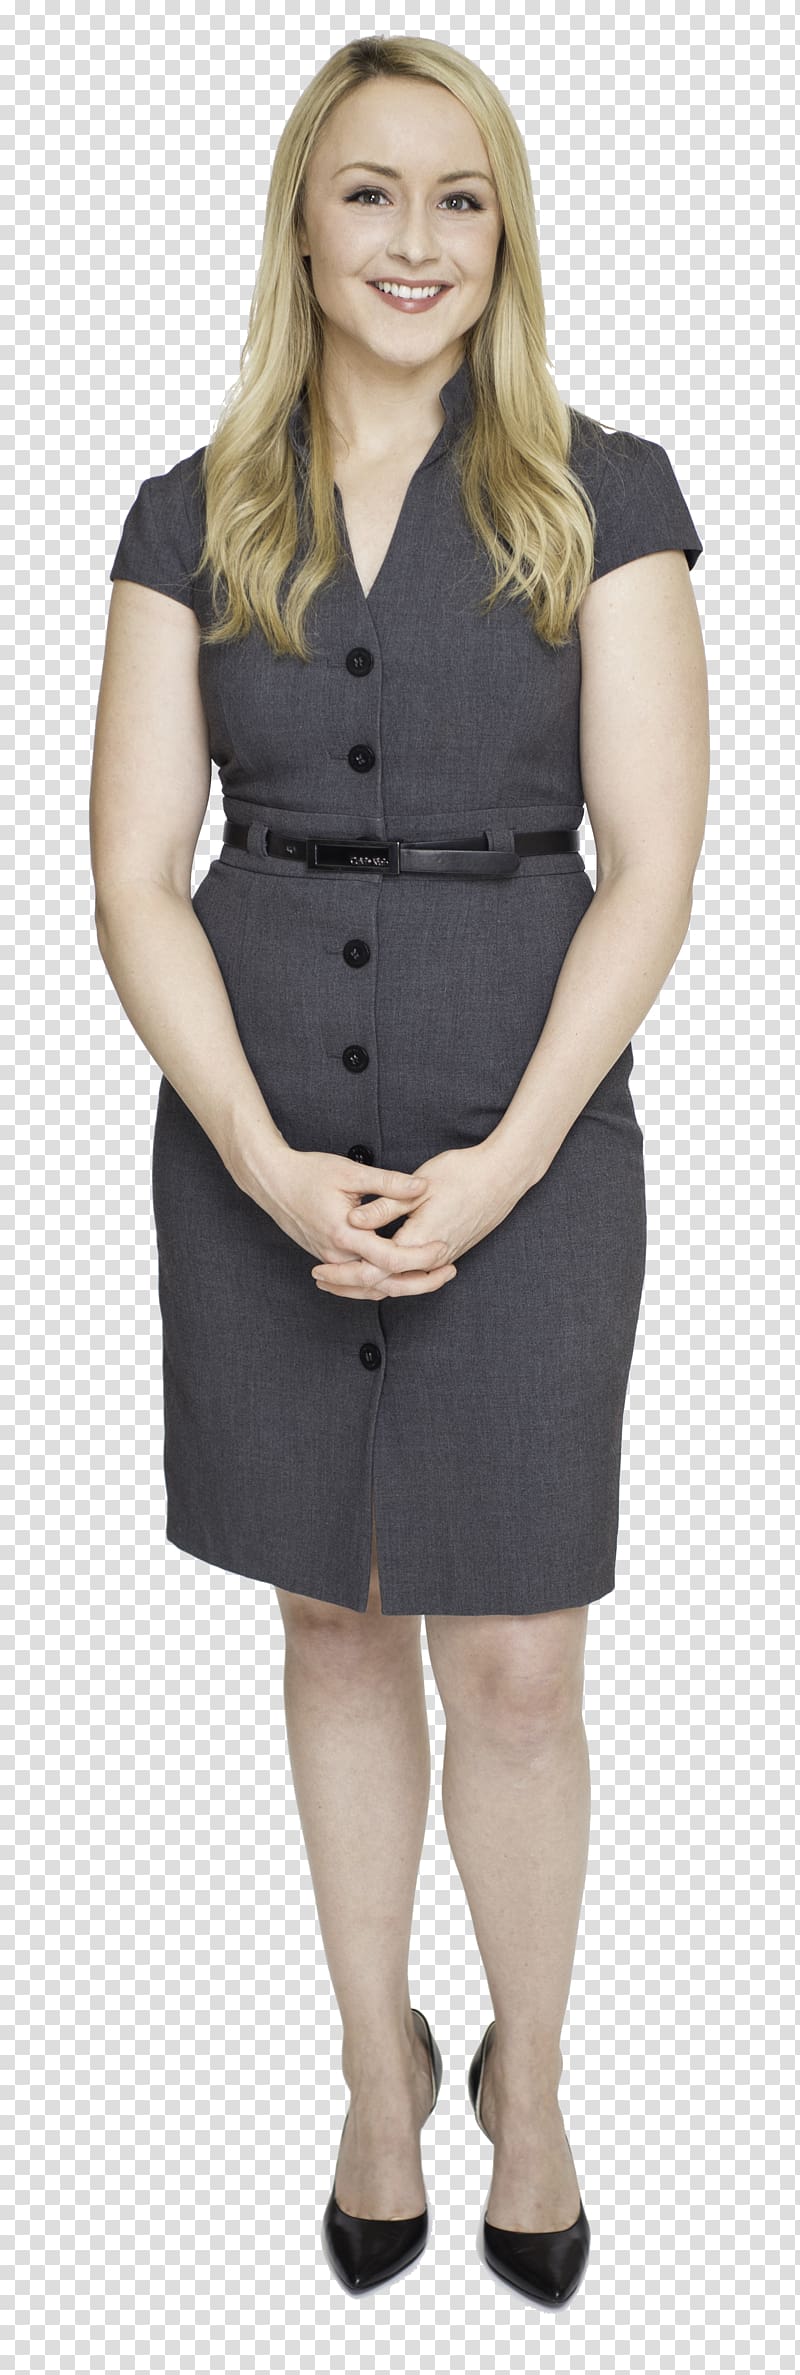 Mika Brzezinski Outerwear Suit Dress Clothing, suit transparent background PNG clipart